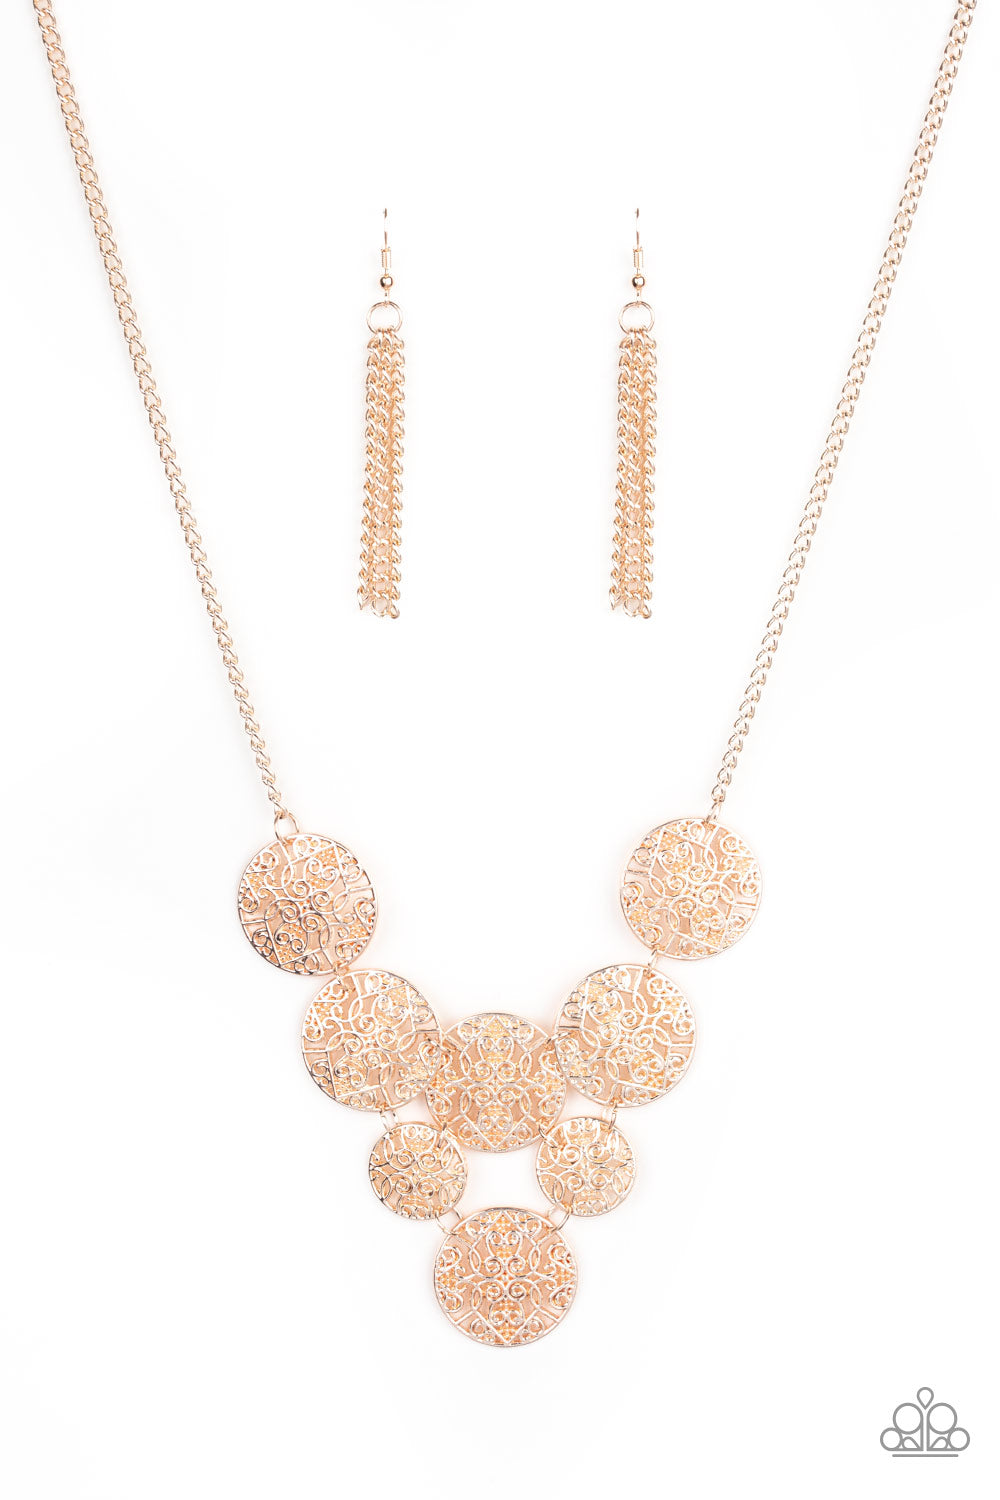 pittmanbling-and-jewelry-inc-presentsmalibu-idol-rose-gold-paparazzi-accessories